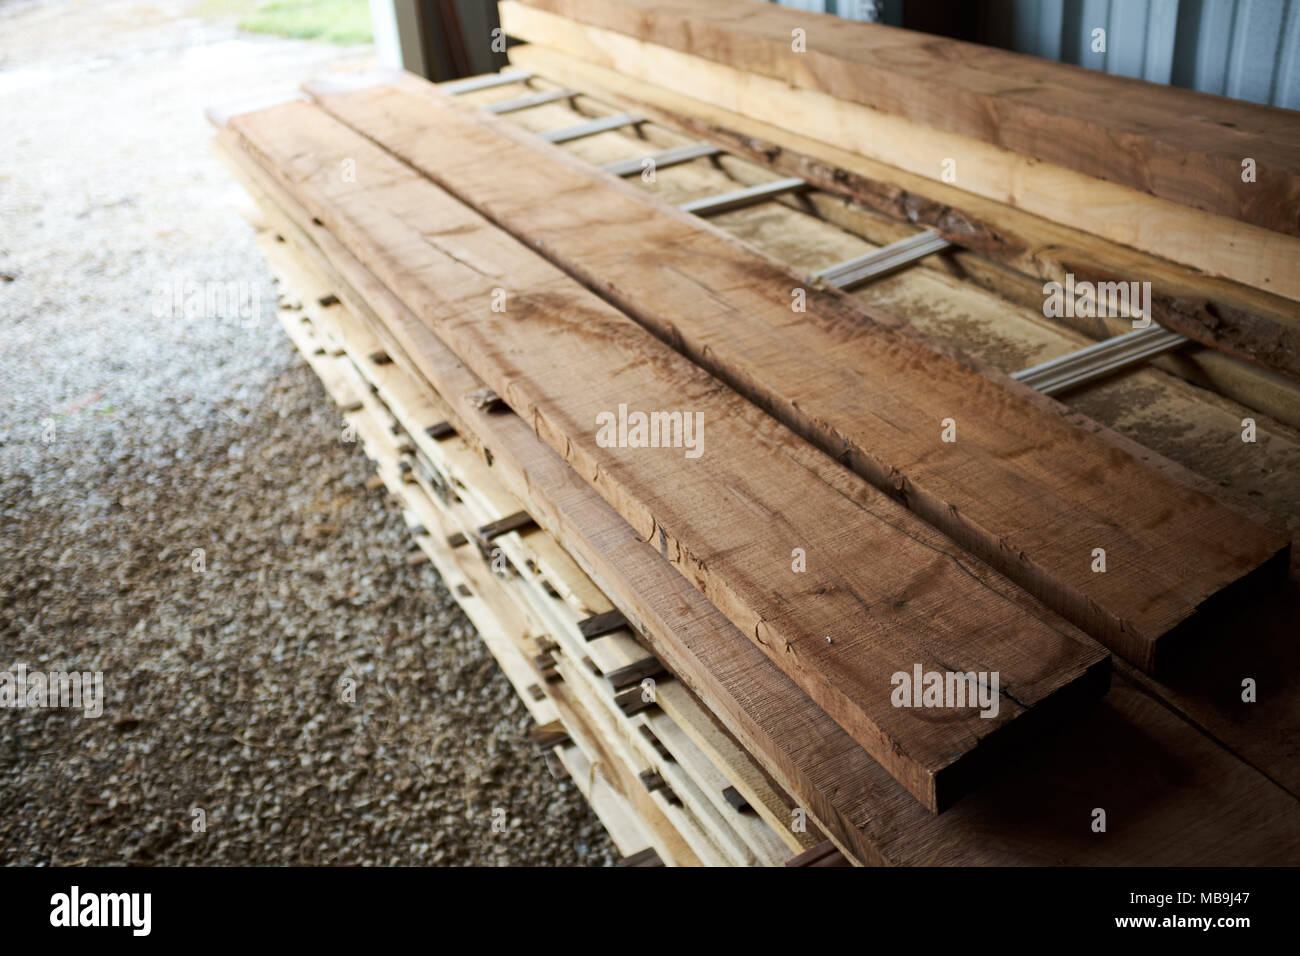 Stapel von frisch geschnittenen rauen Planken für Bauarbeiten an einem Holz Mühle gesehen selbst die Länge in der Nähe zu sehen, mit Kopie Raum Stockfoto